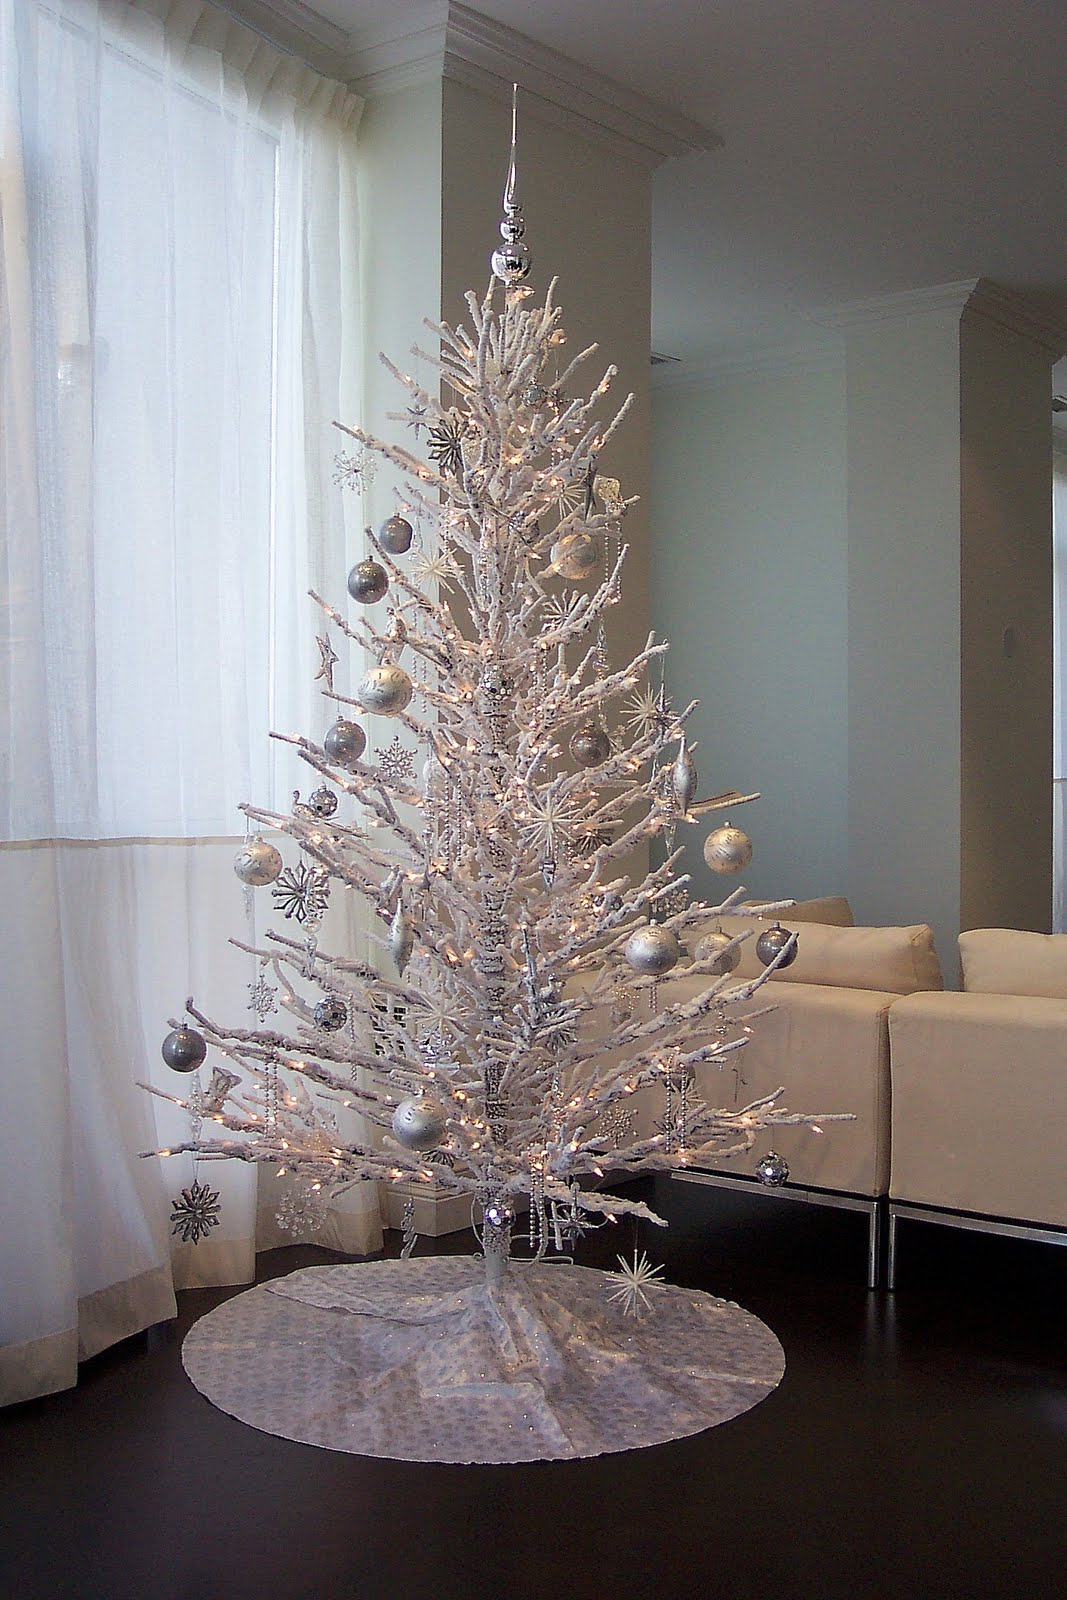 https://1.bp.blogspot.com/-MglifBWA6Tc/TvTx0Vq8ueI/AAAAAAAAATE/lqEOfKlYDN0/s1600/8_Christmas-tree-decorating-Christmas-tree-decorating-ideas-best-Christmas-tree-decorating-ideas.jpg